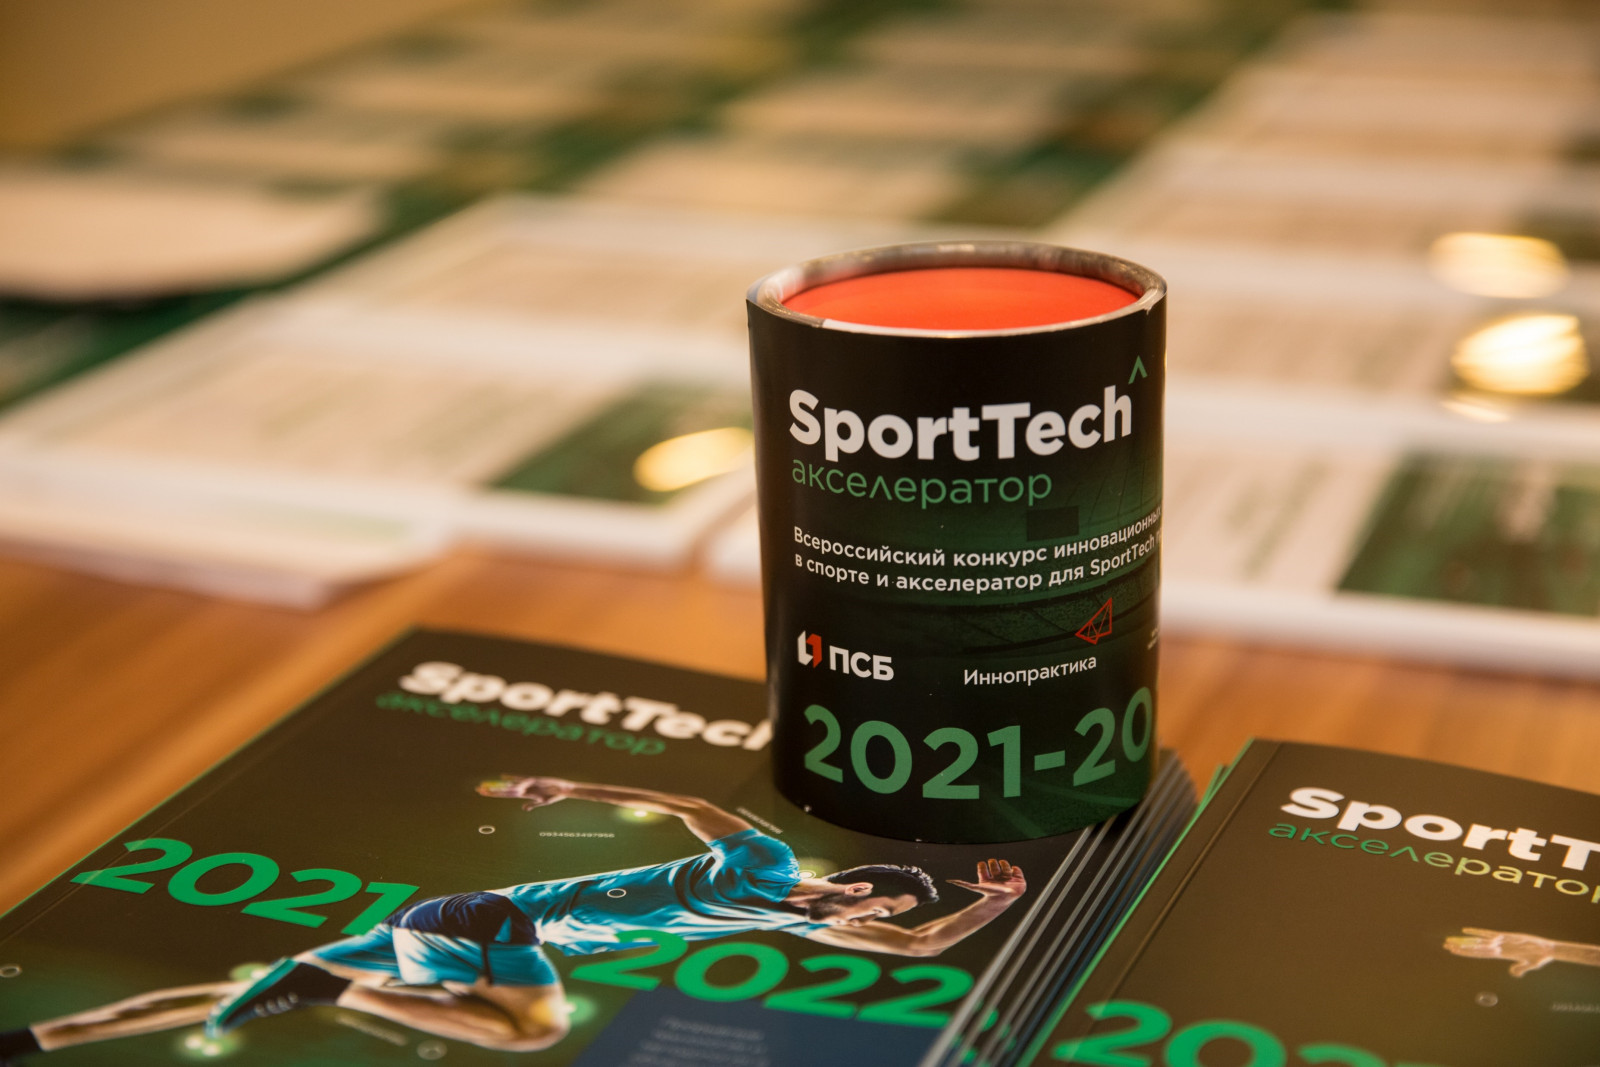 Конкурс инновационных проектов в спорте и акселератор для SportTech проектов 2023